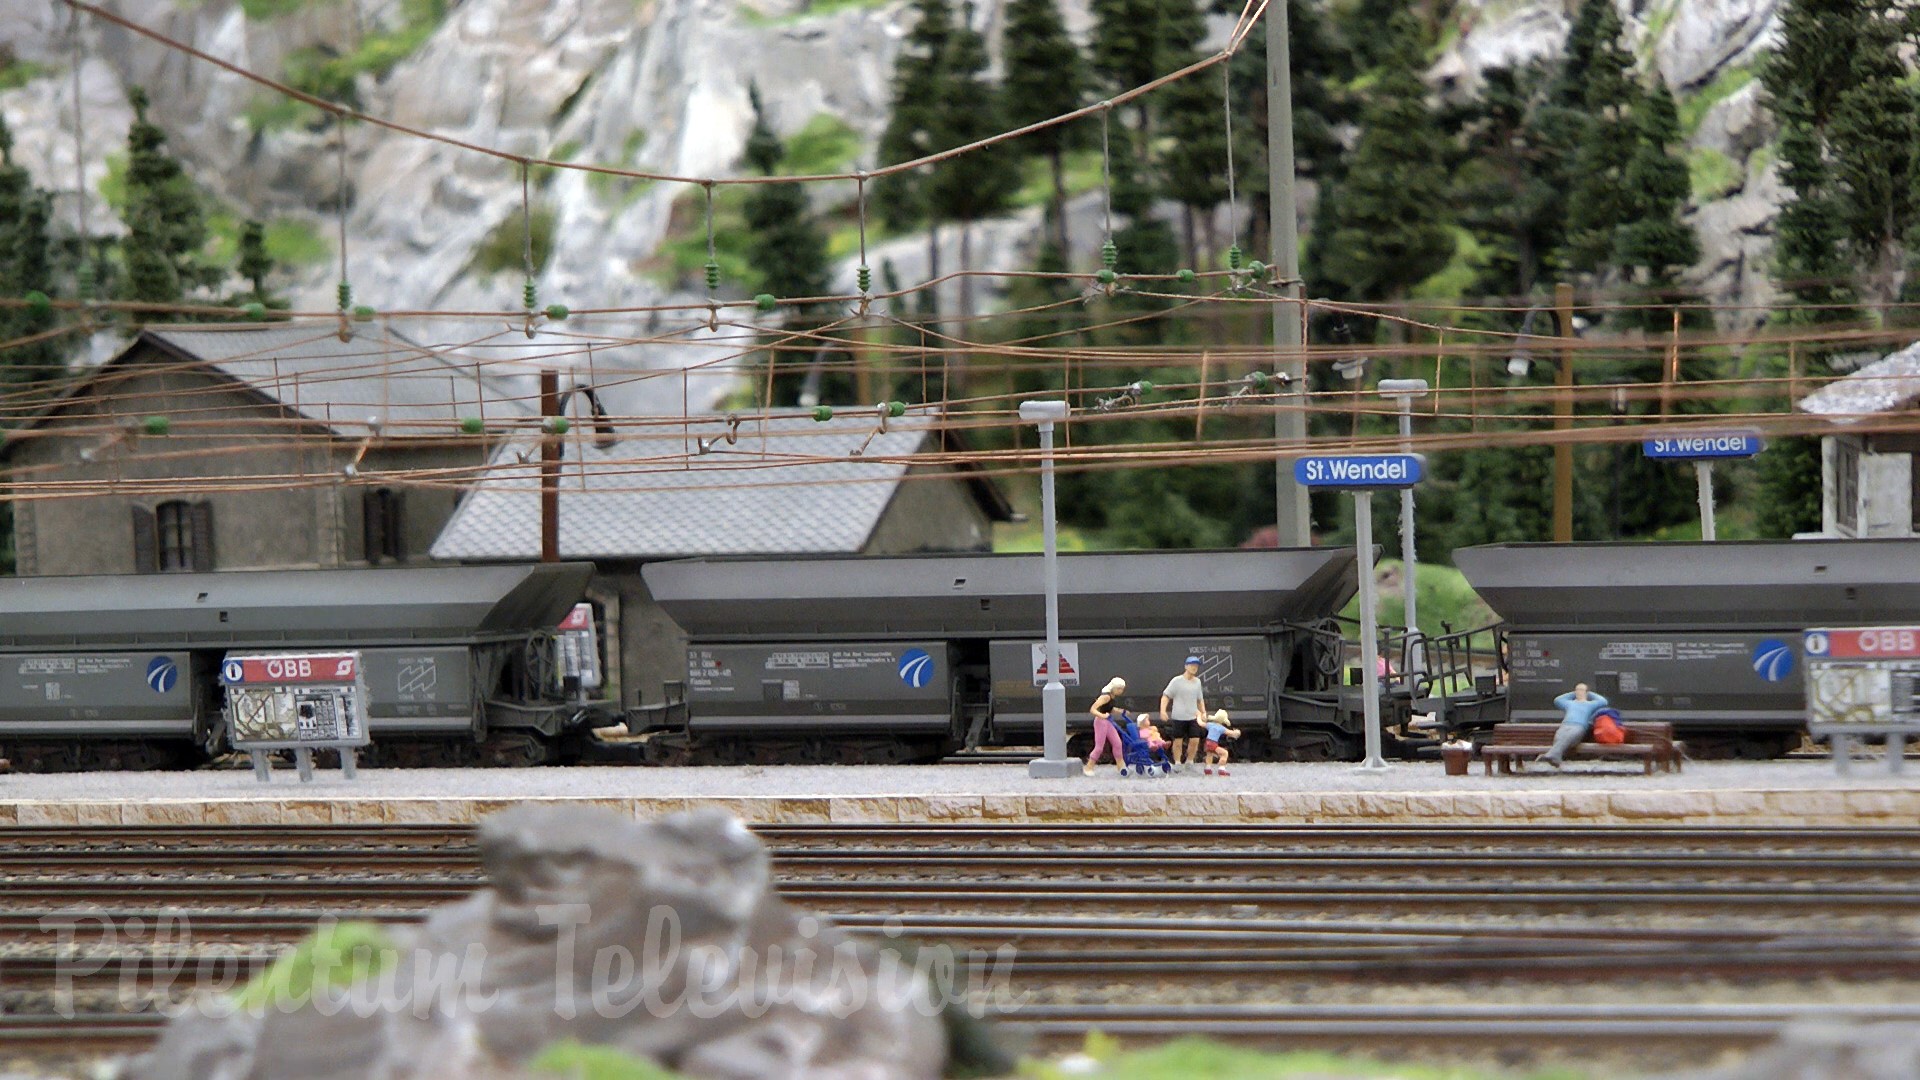 Machete feroviare în scară H0 din Austria: Descoperiți frumusețea acestui peisaj montan